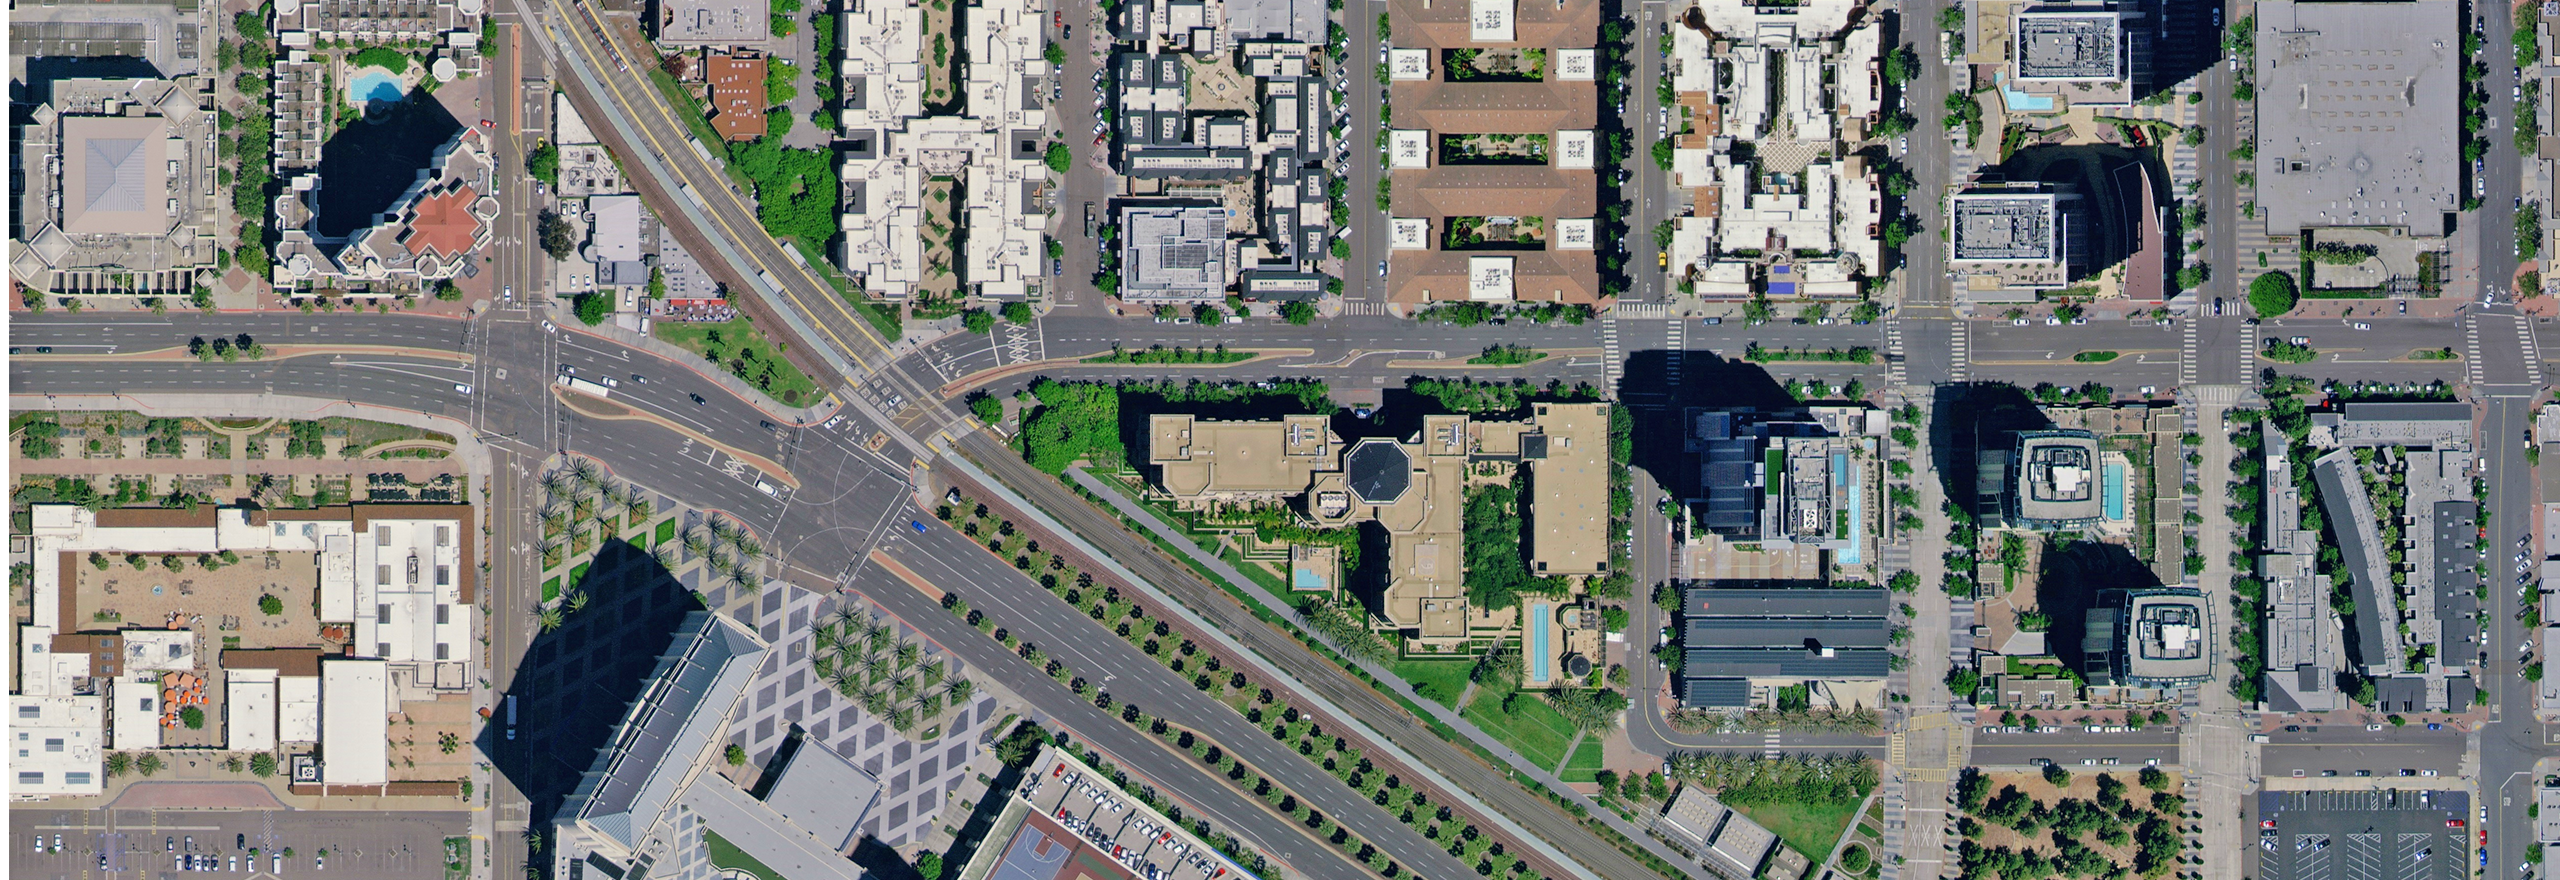 Imagerie aérienne de blocs d'immeubles à San Diego